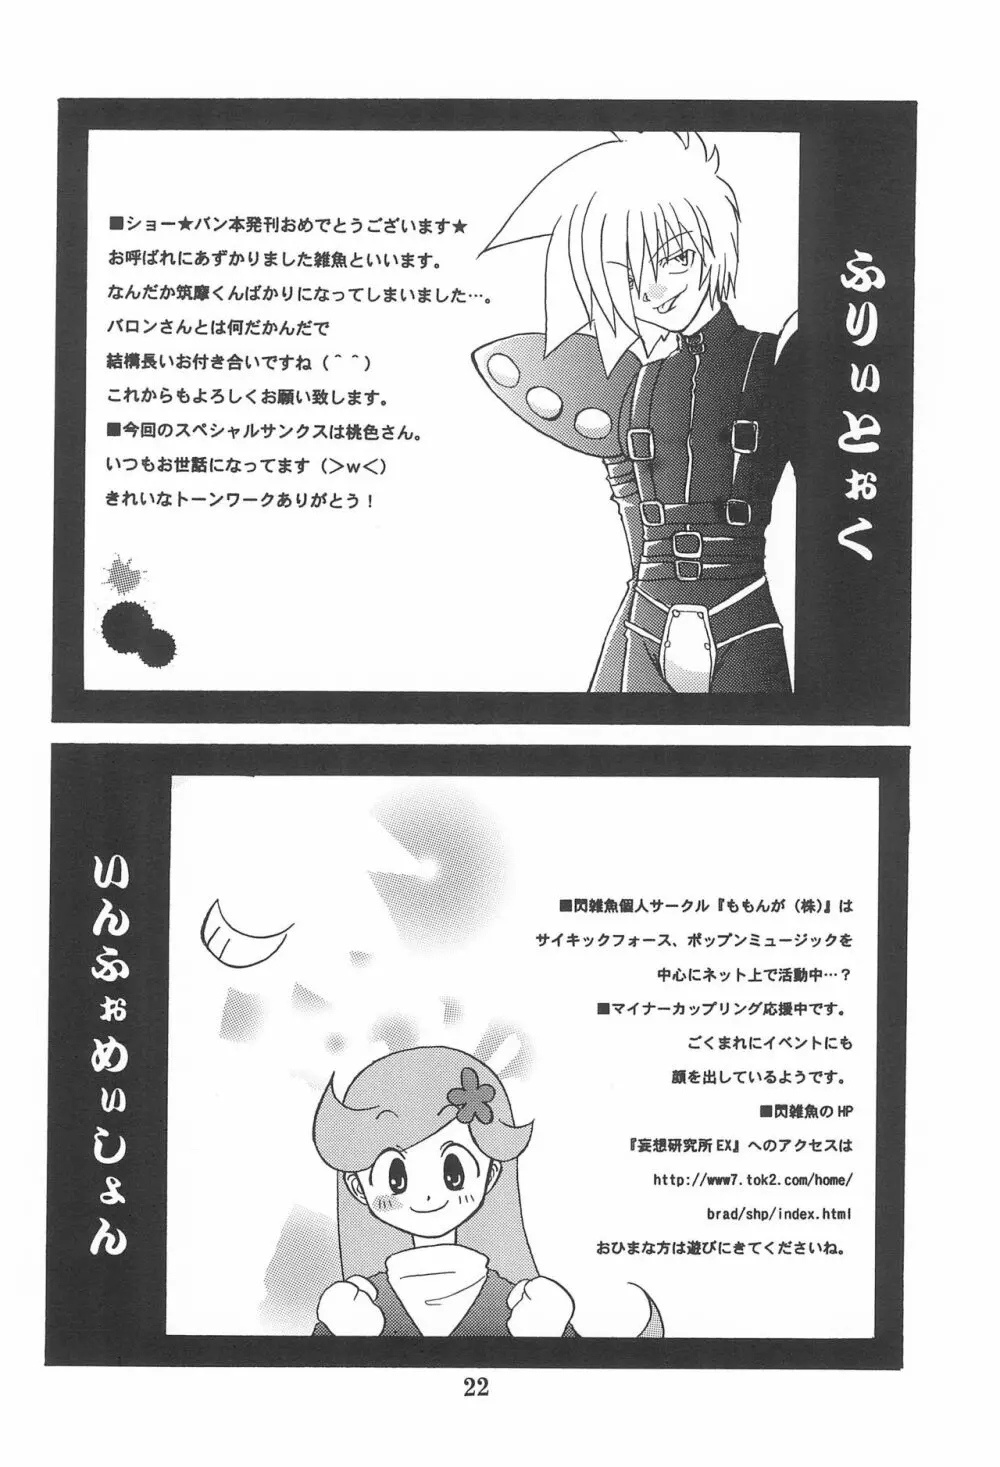 少年ショー☆バン 創刊号 1 24ページ